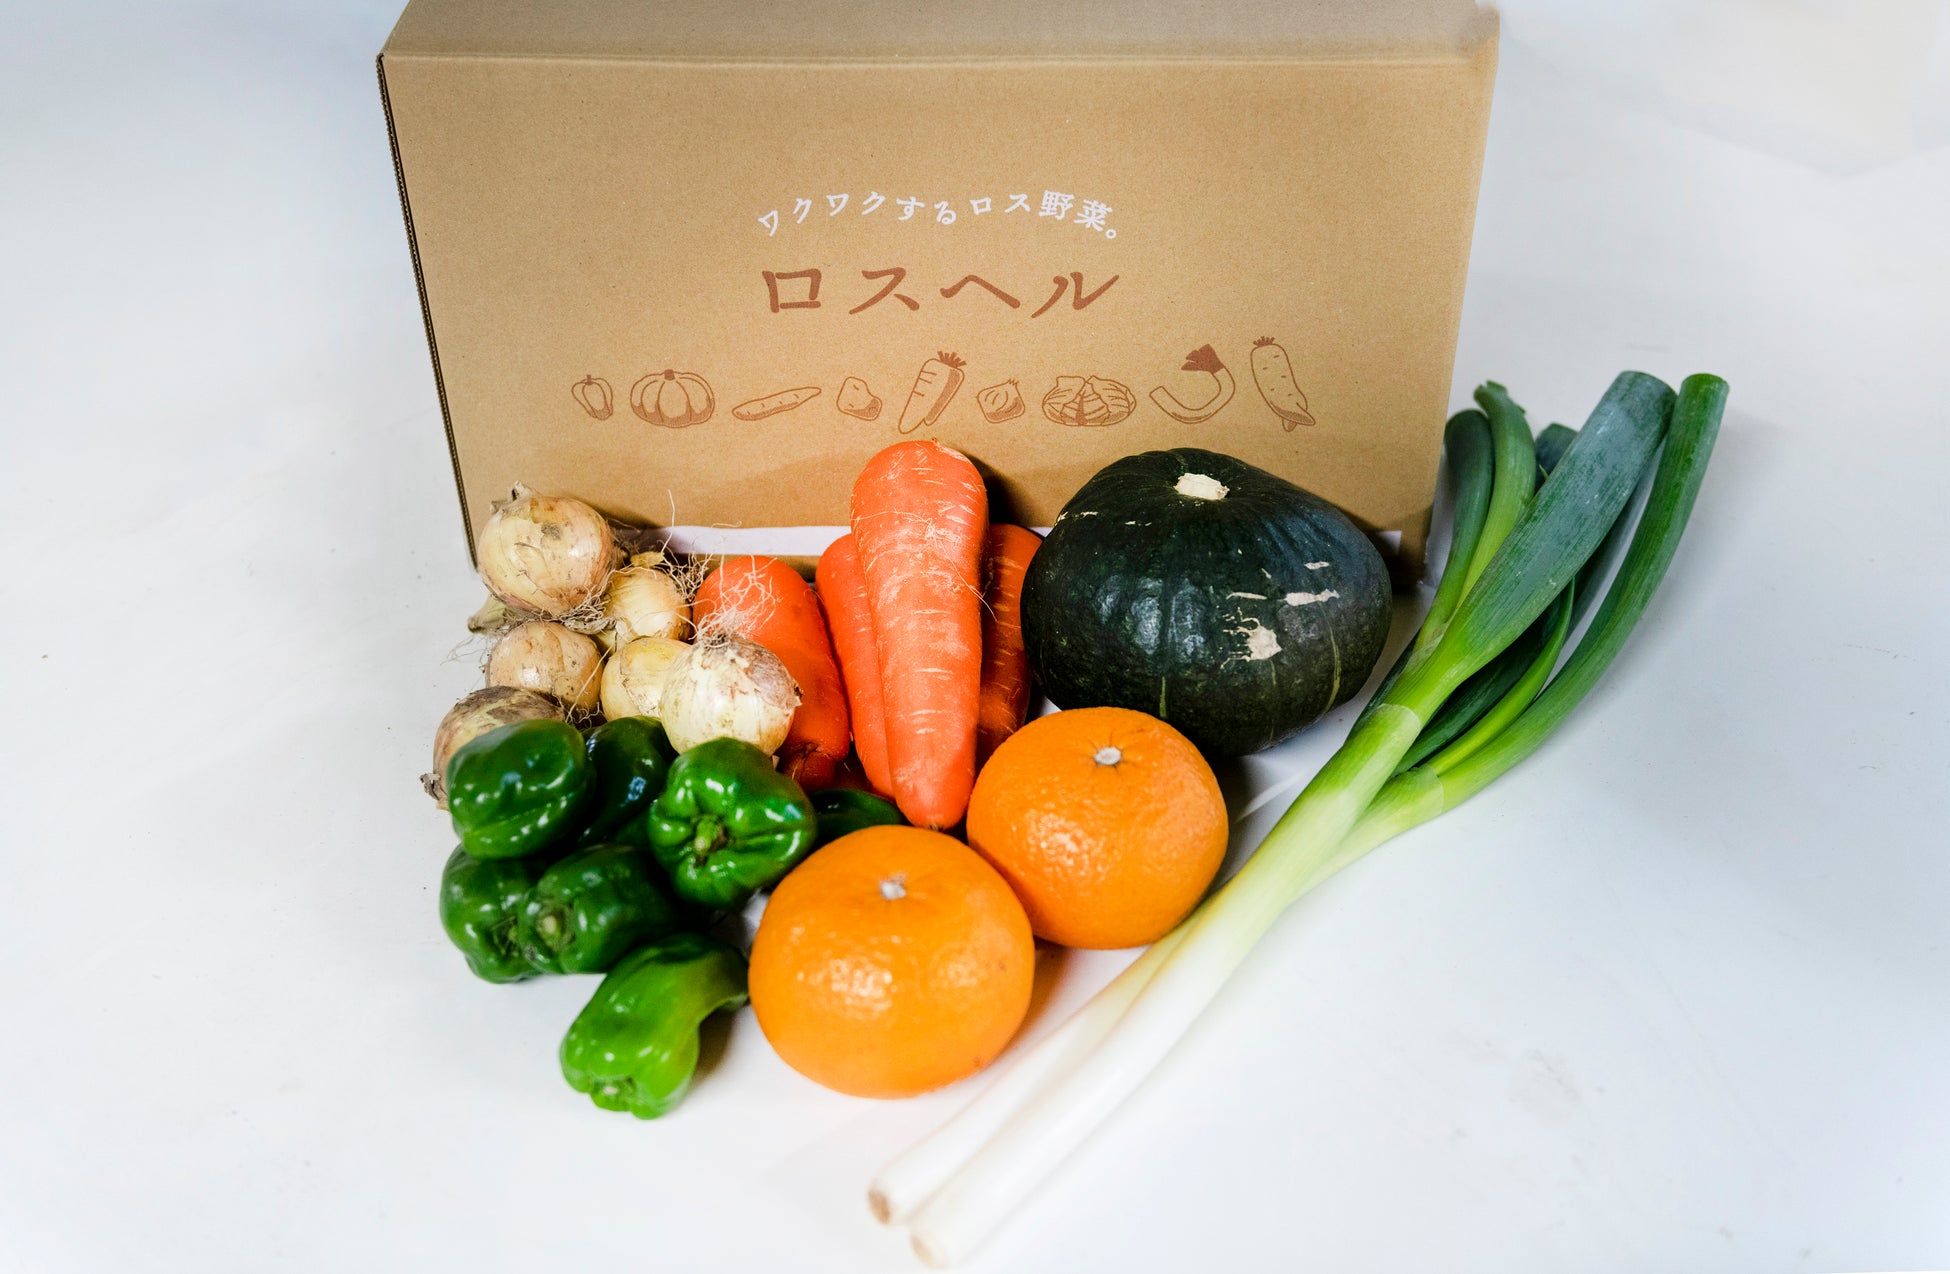 福井大学教育学部附属義務教育学校の小学6年生が食品ロスを学ぶために文化祭で「ロスヘル」を紹介・販売